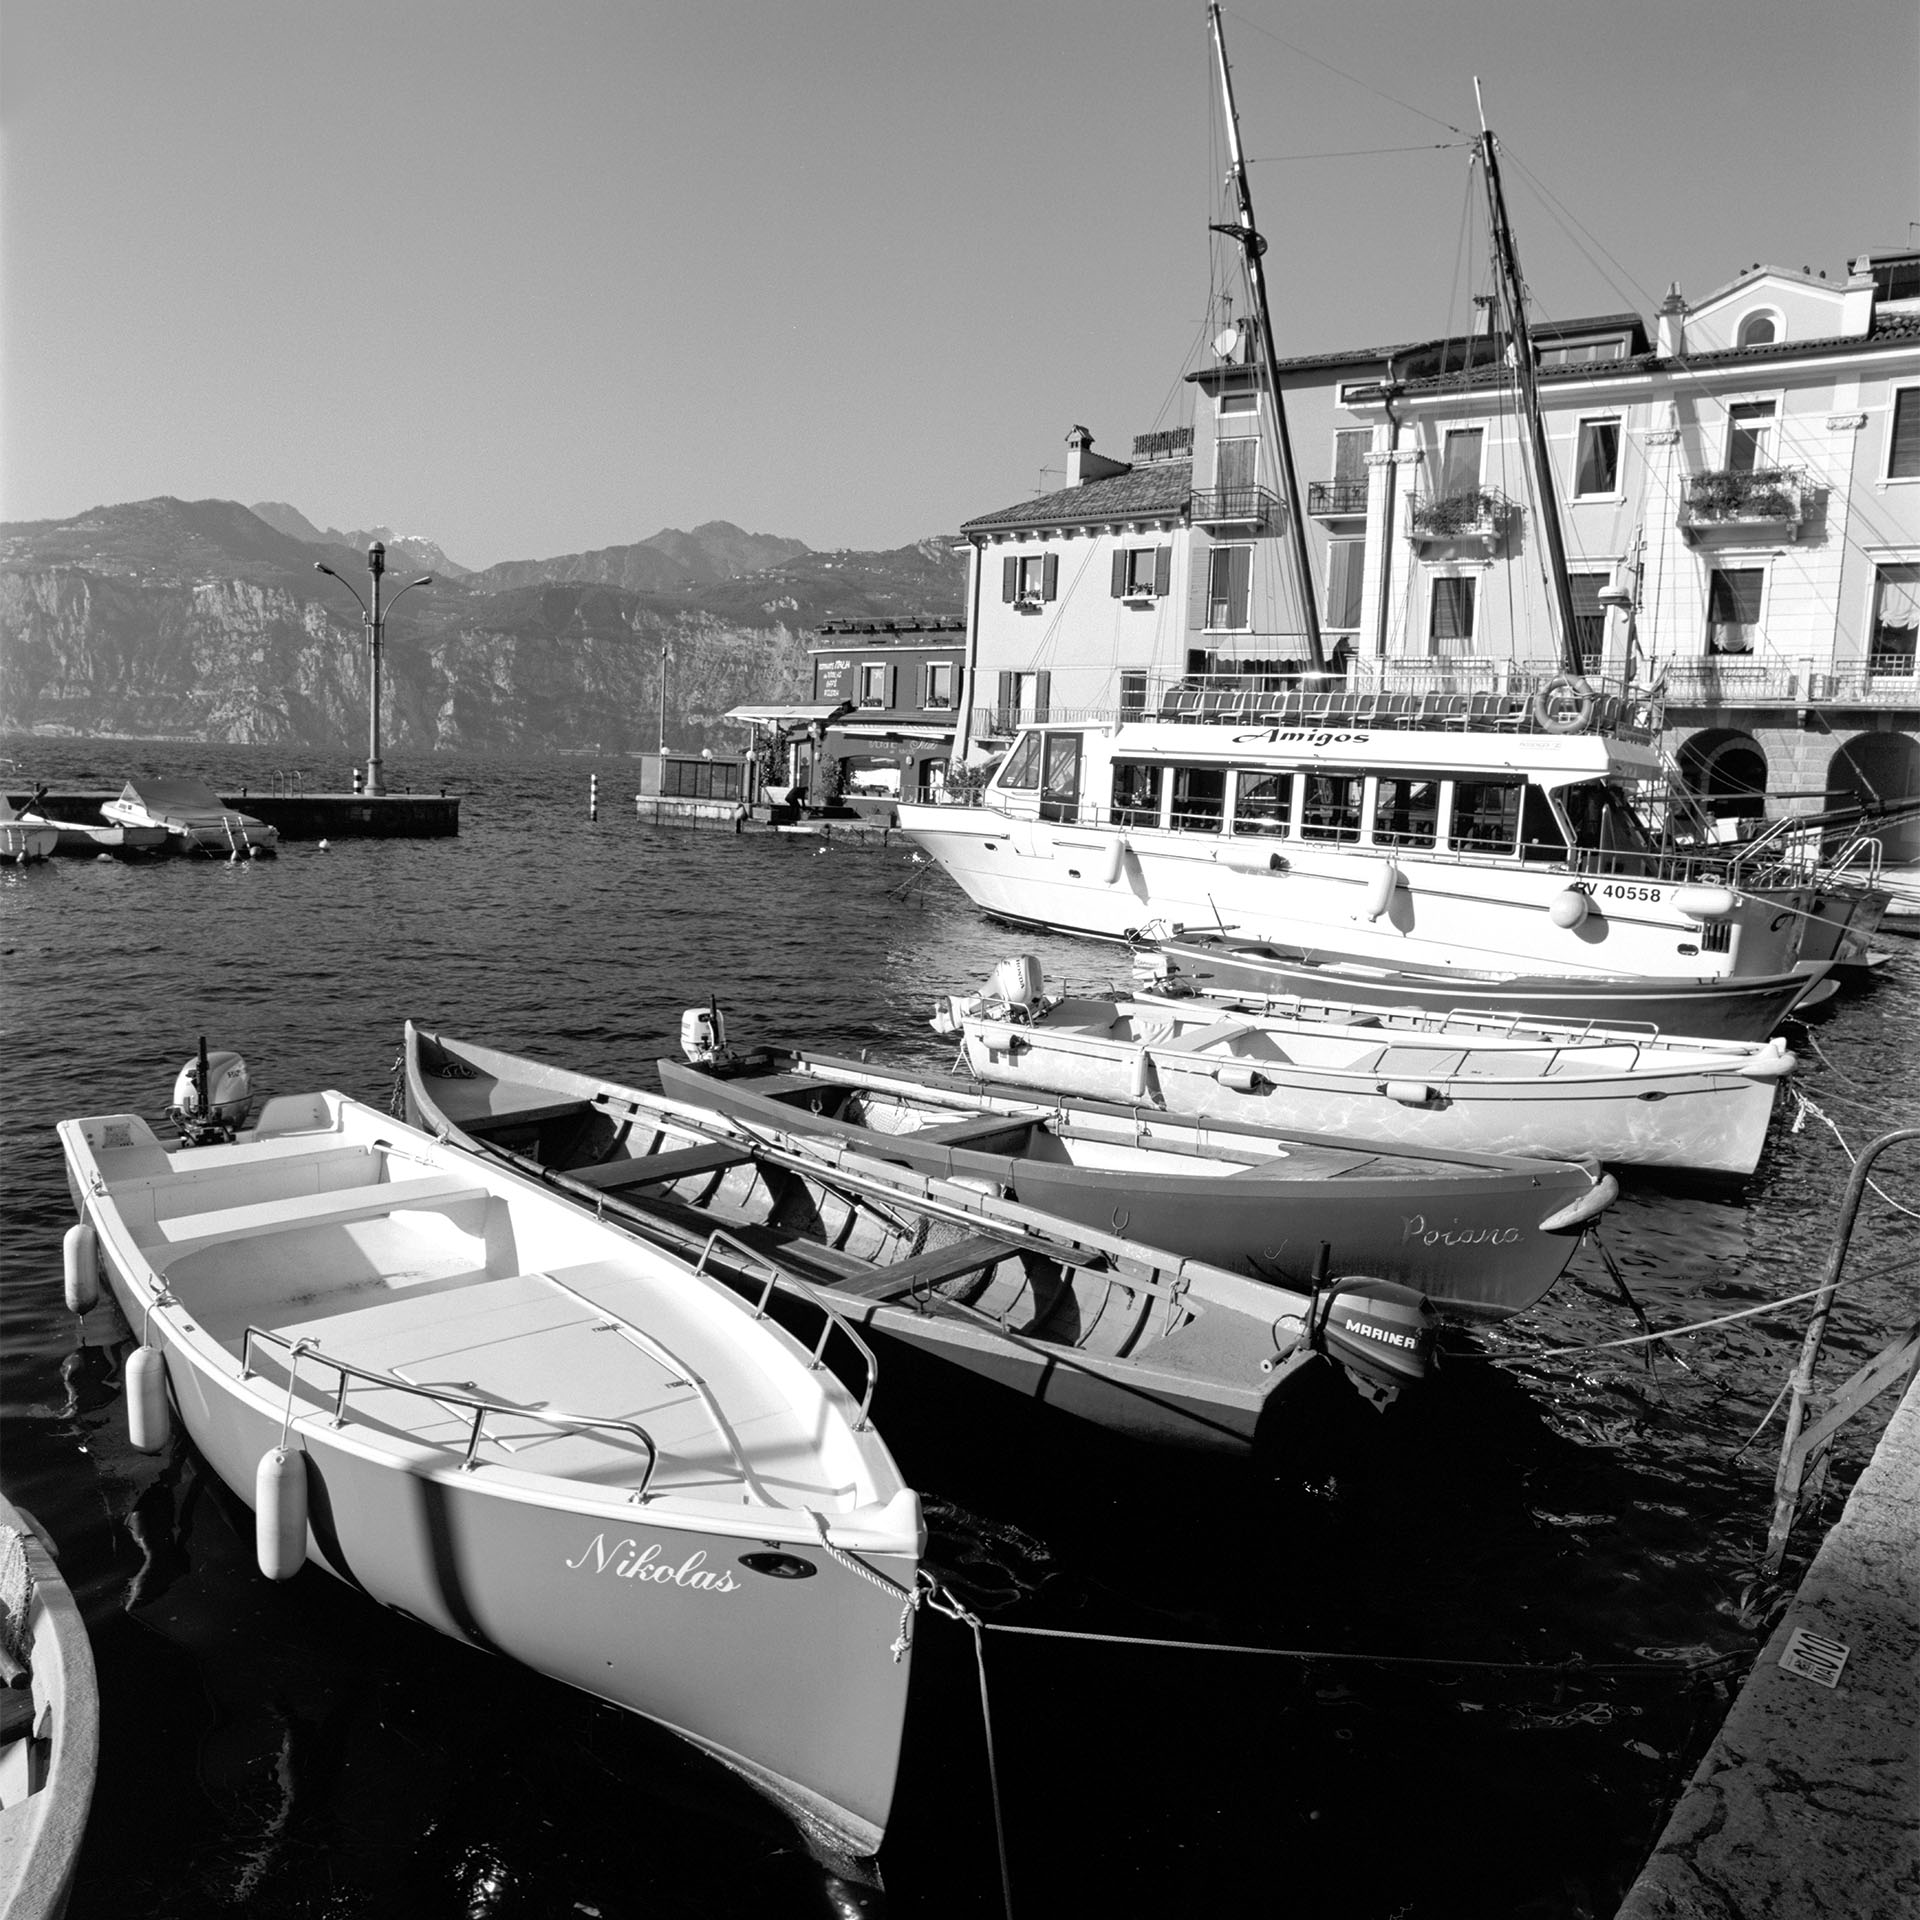 Der Hafen von Malcesine am Gardasee ohne geschäftiges Treiben. Was für ein Idyll das sein kann.